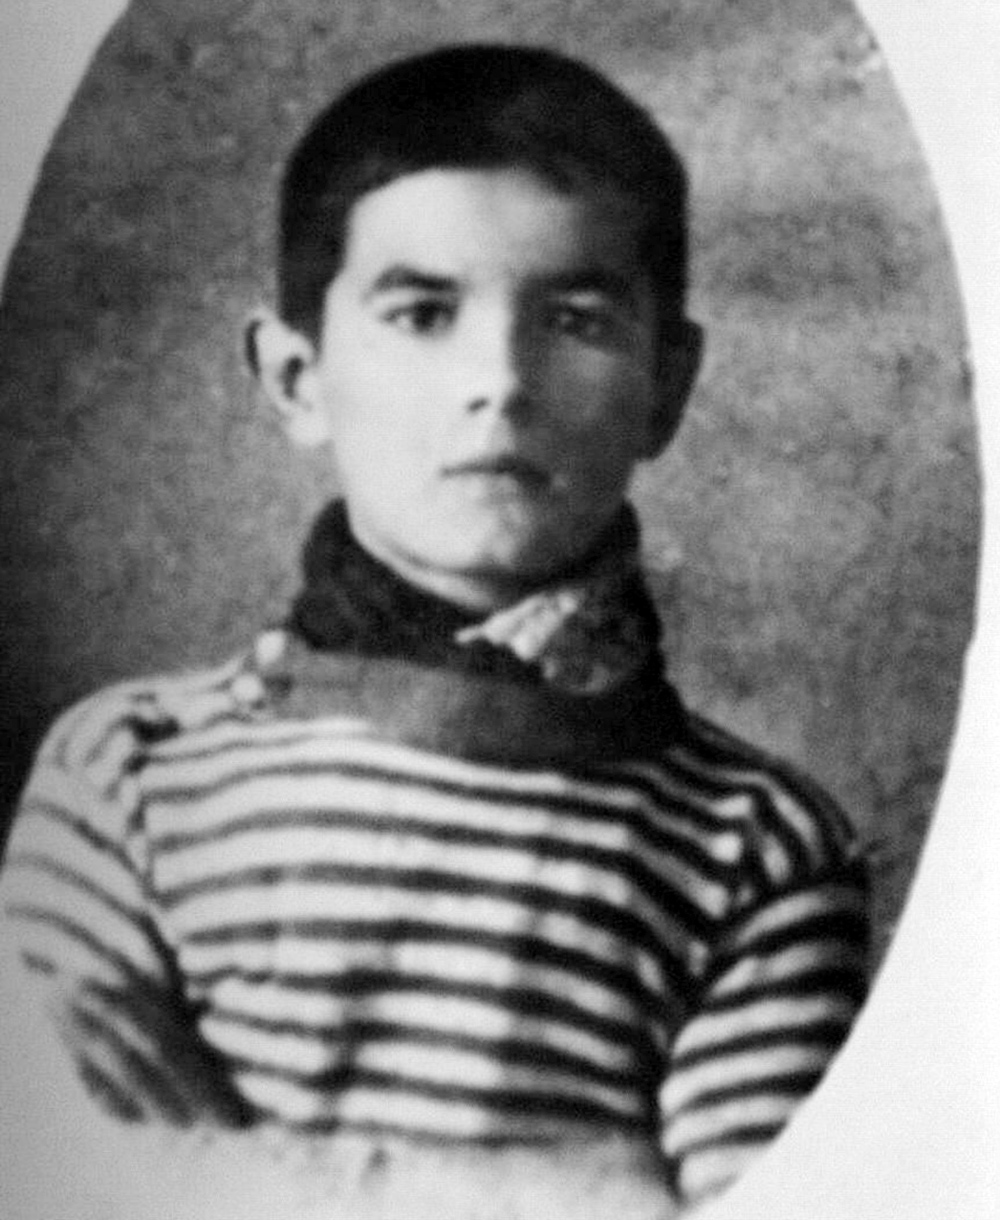 Portrait de Désiré Bianco, plus jeune poilu mort pour la France à l'âge de 13 ans